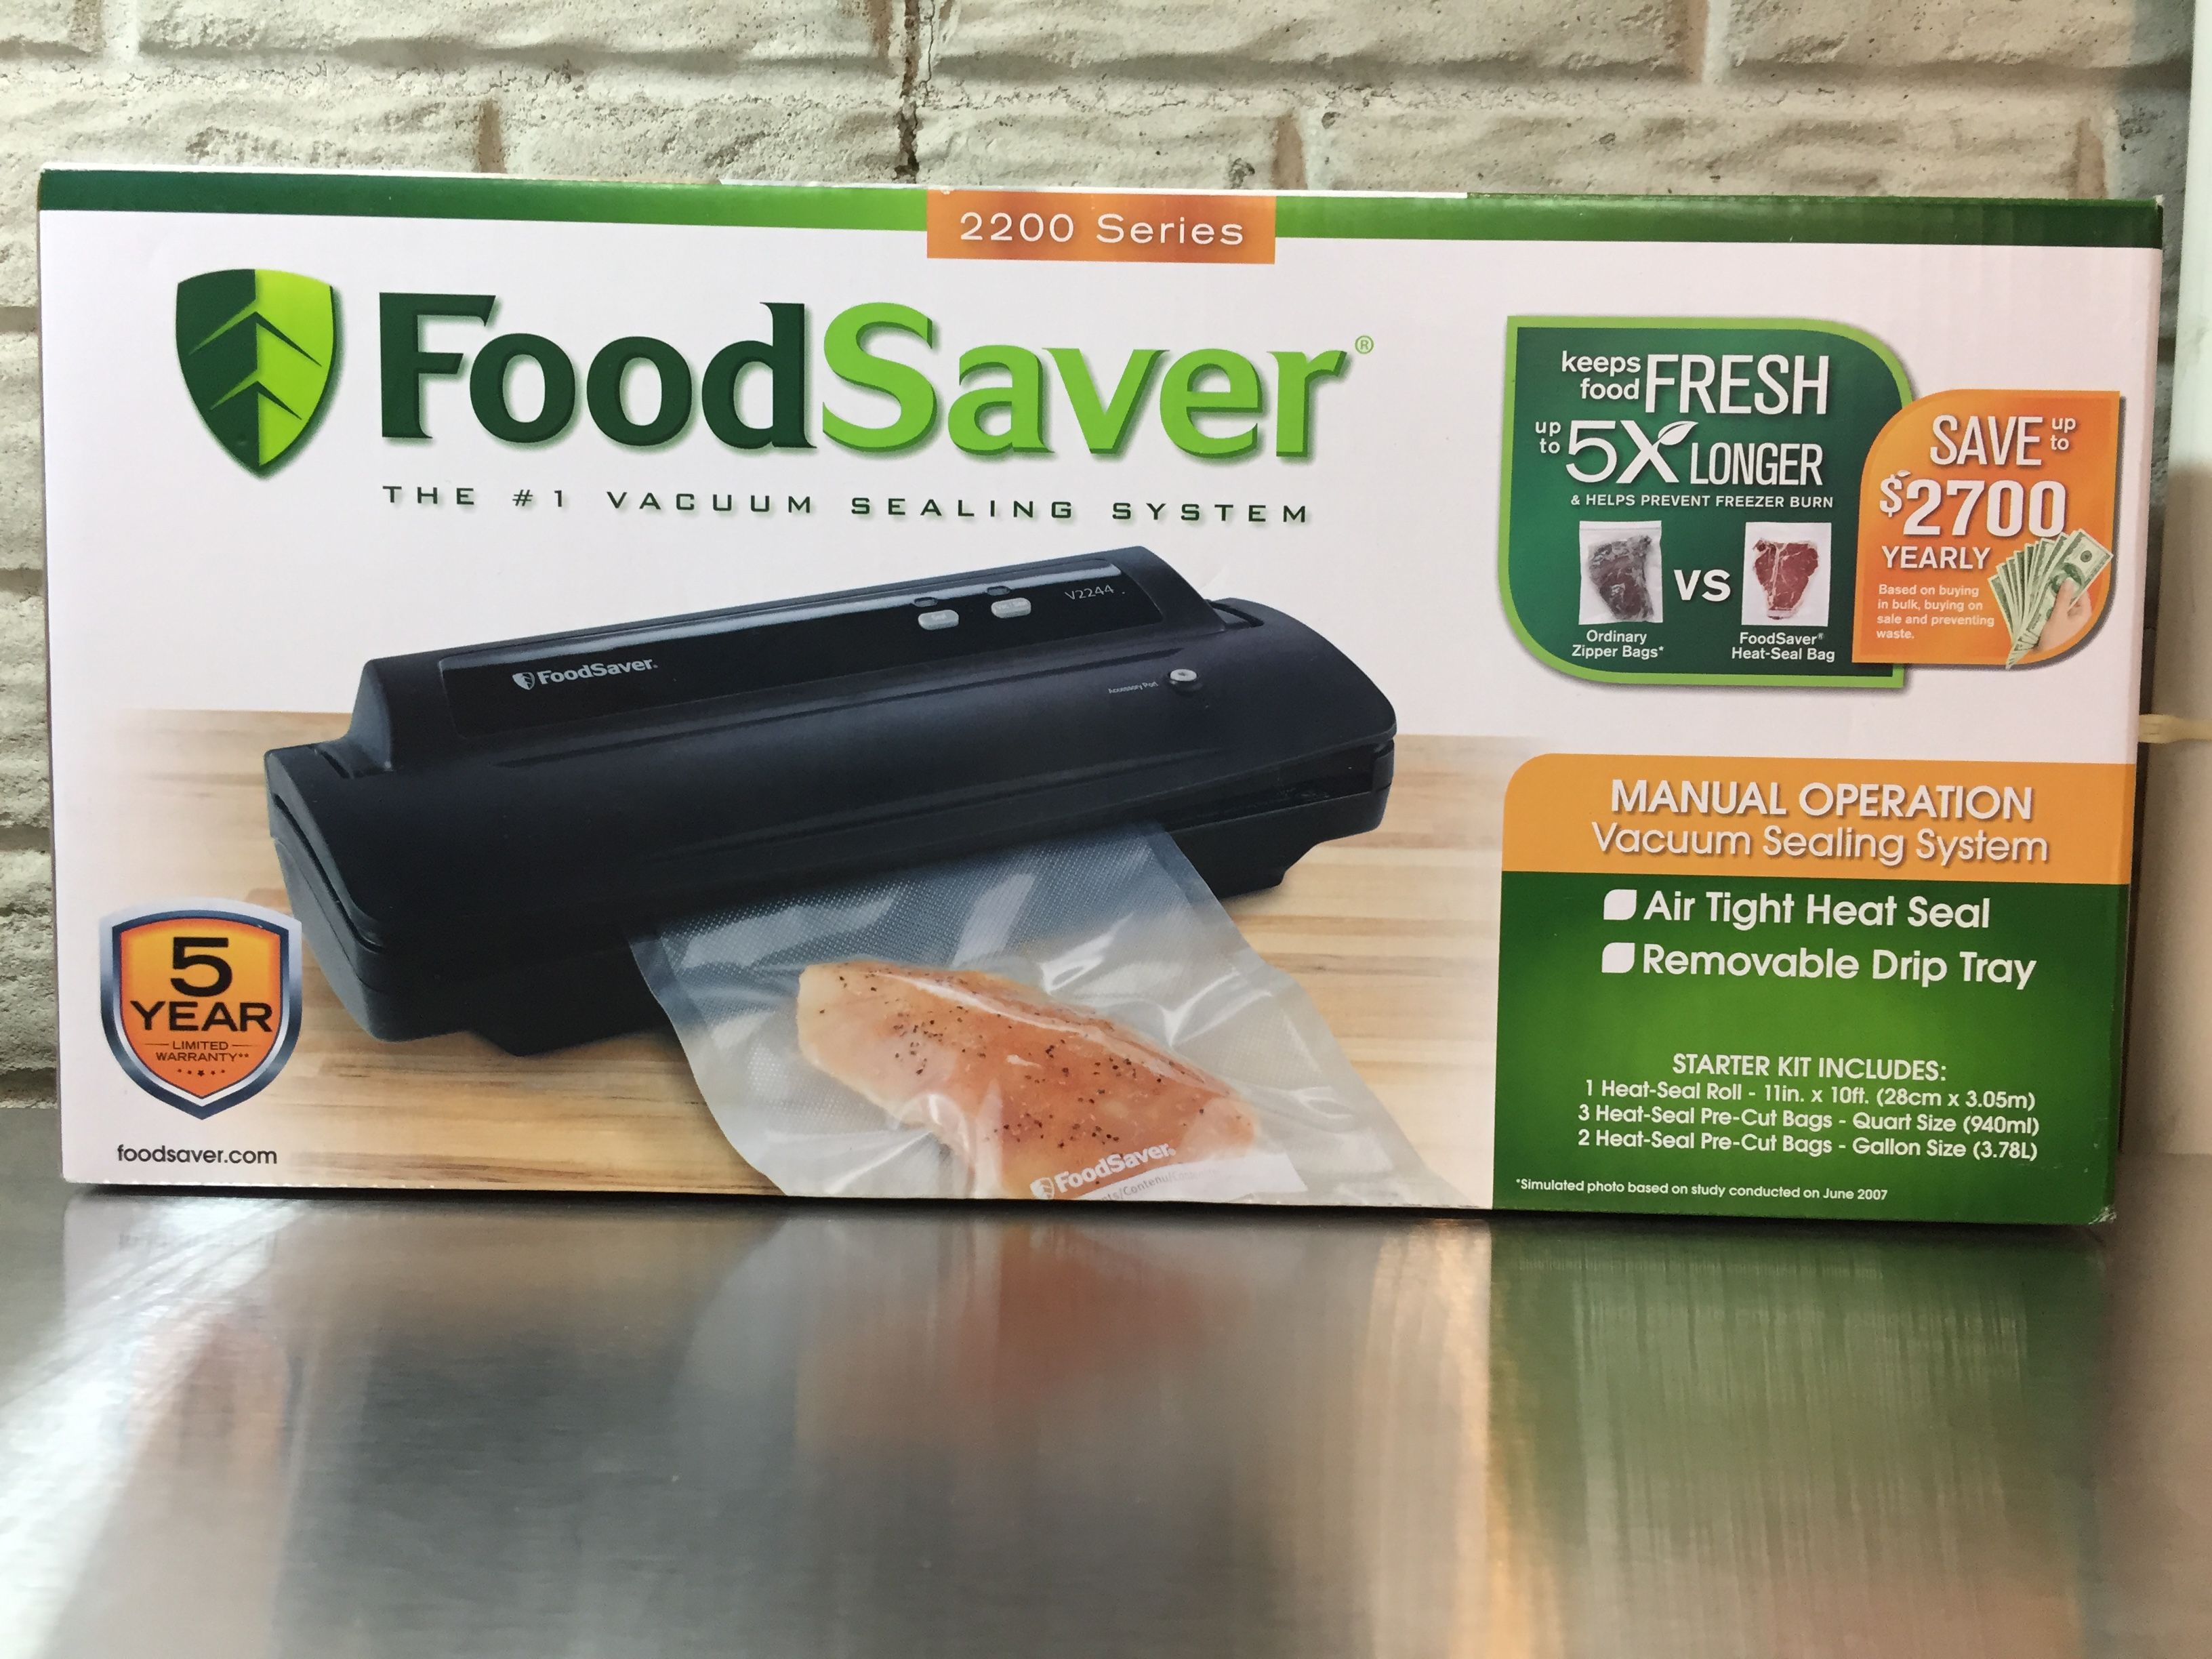 FoodSaver Vacuum Sealing System, 2200 Series